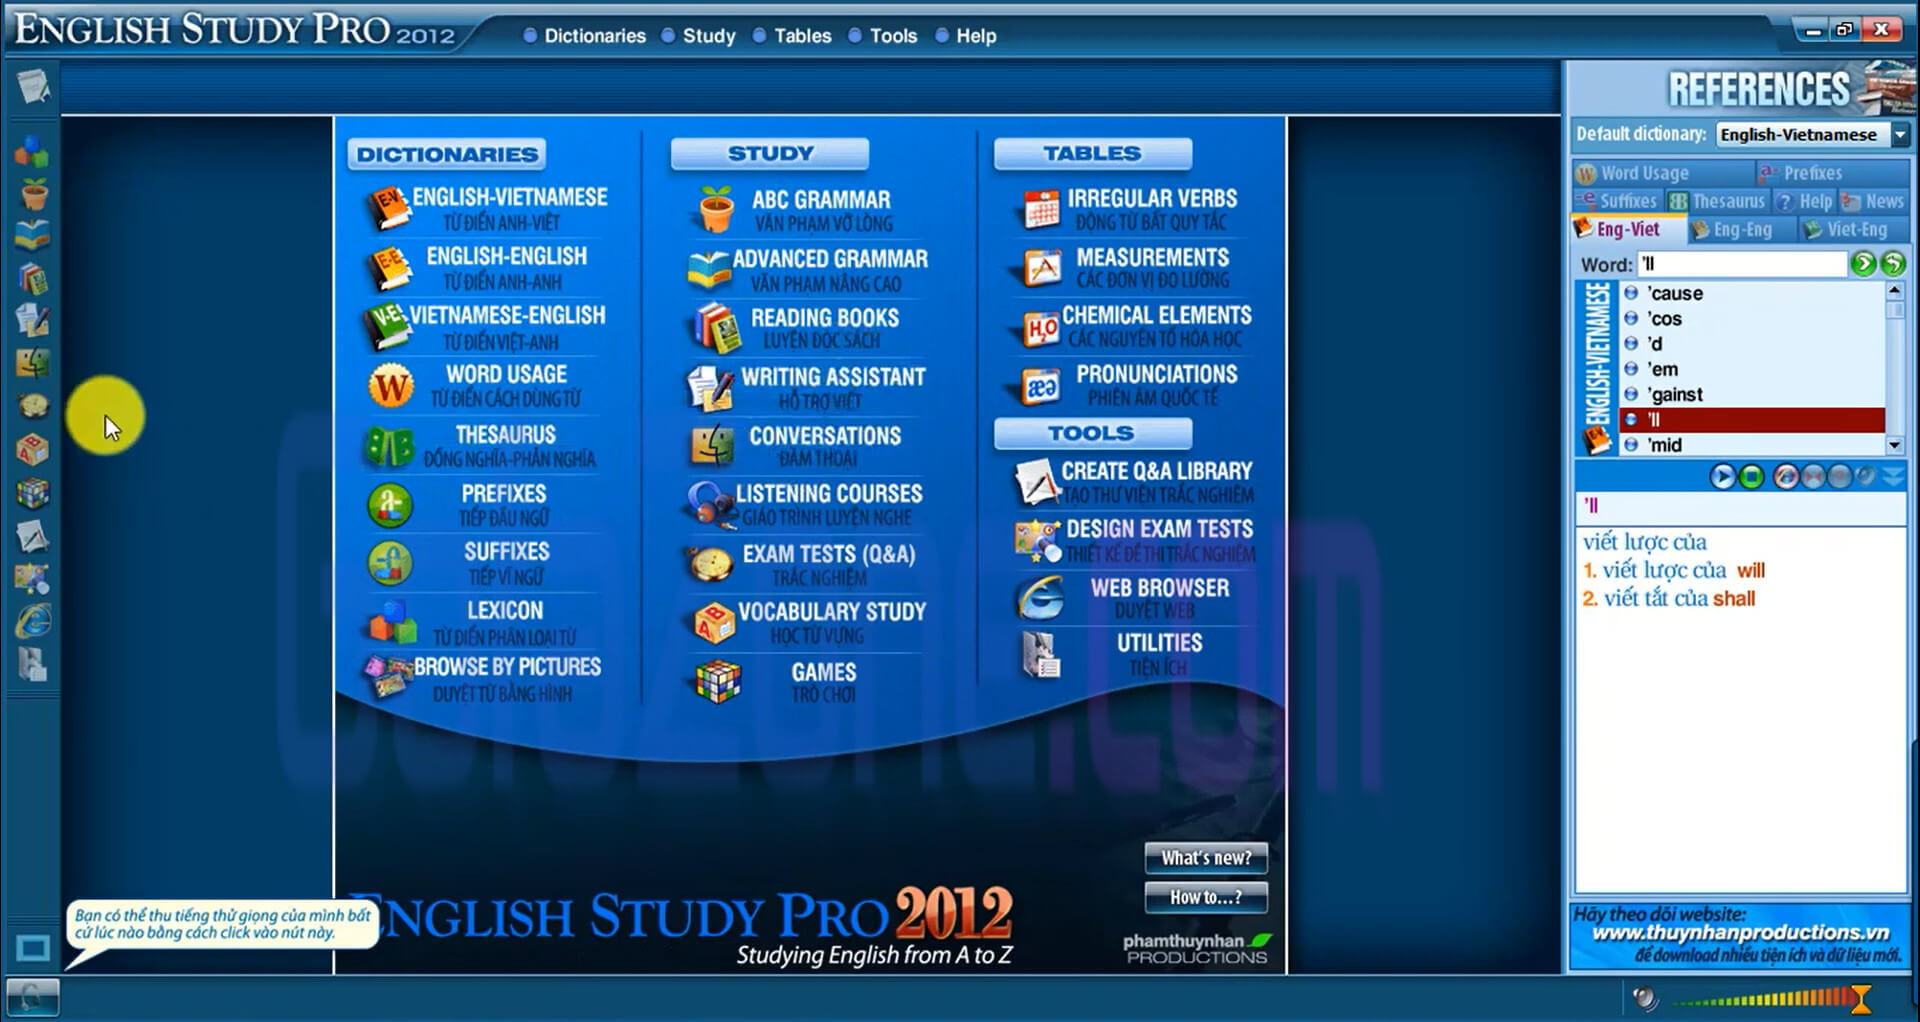 English Study Pro 2012